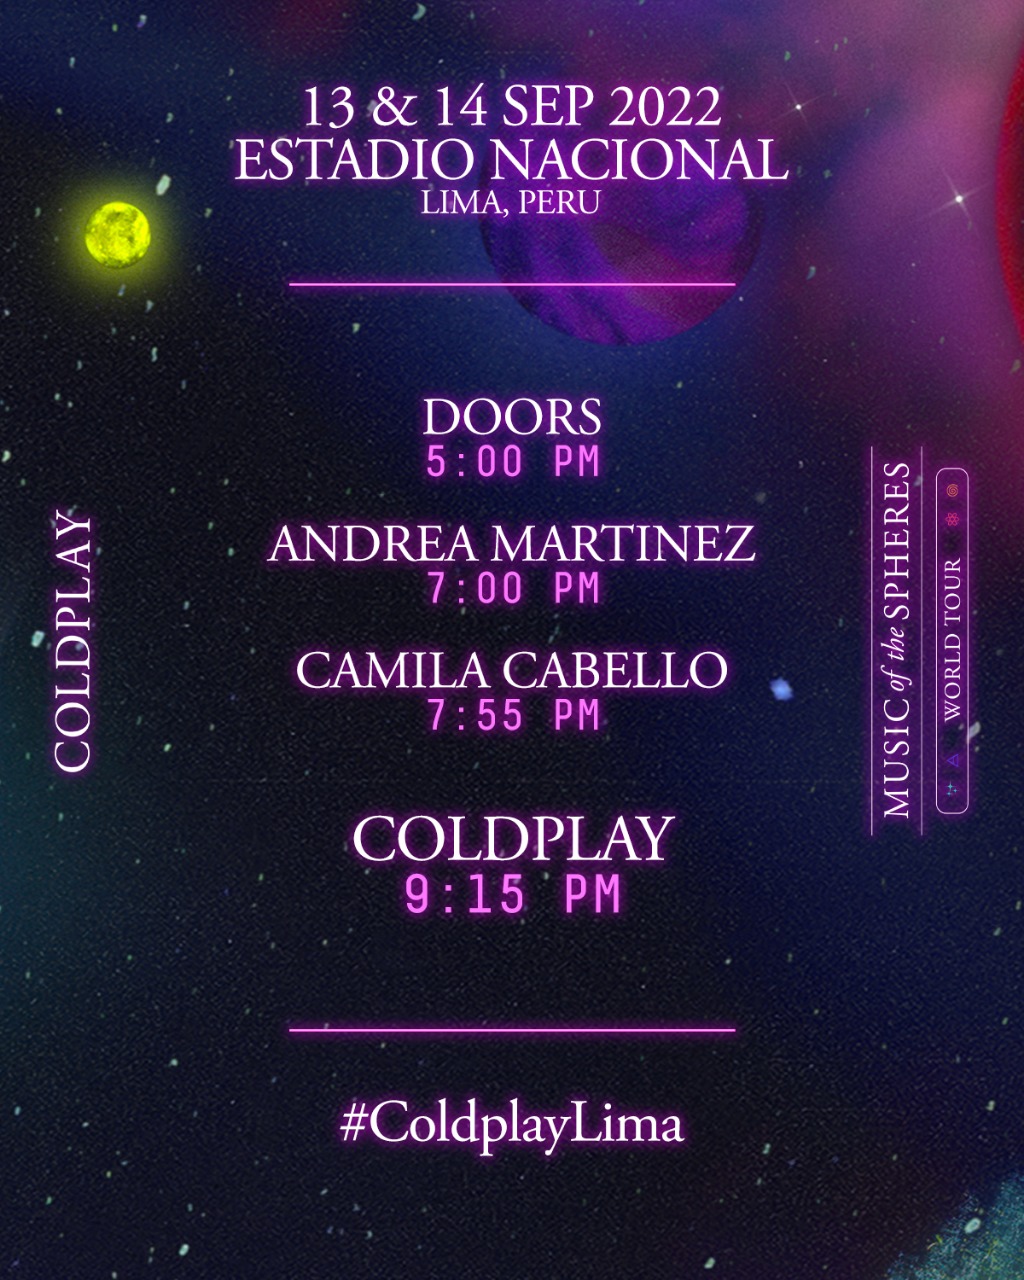 Coldplay brindará su concierto pasando las 21:00 horas. | Instagram